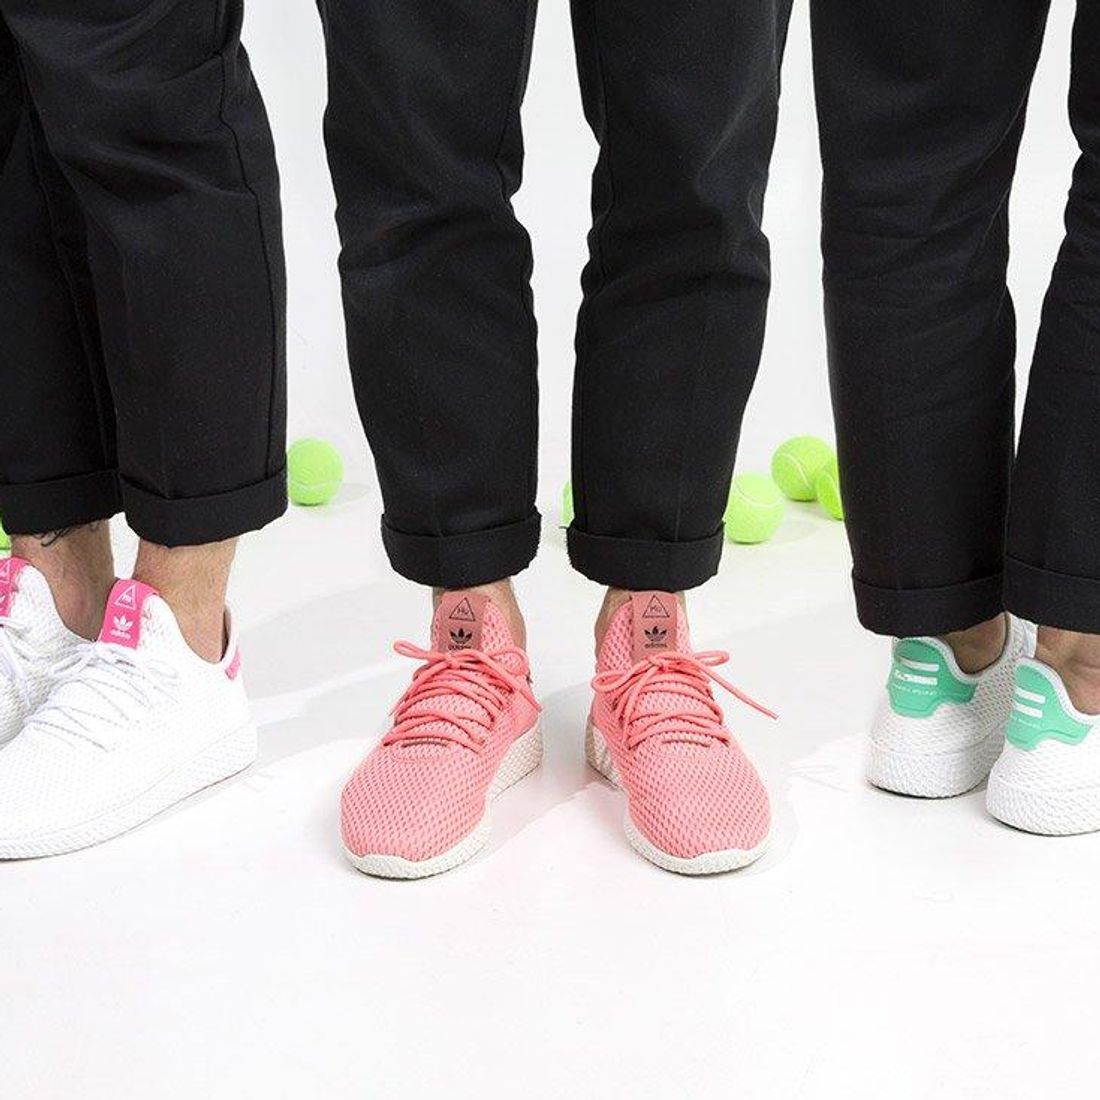 An On-Feet Look At The Pharrell Williams x adidas HU POD S3.1